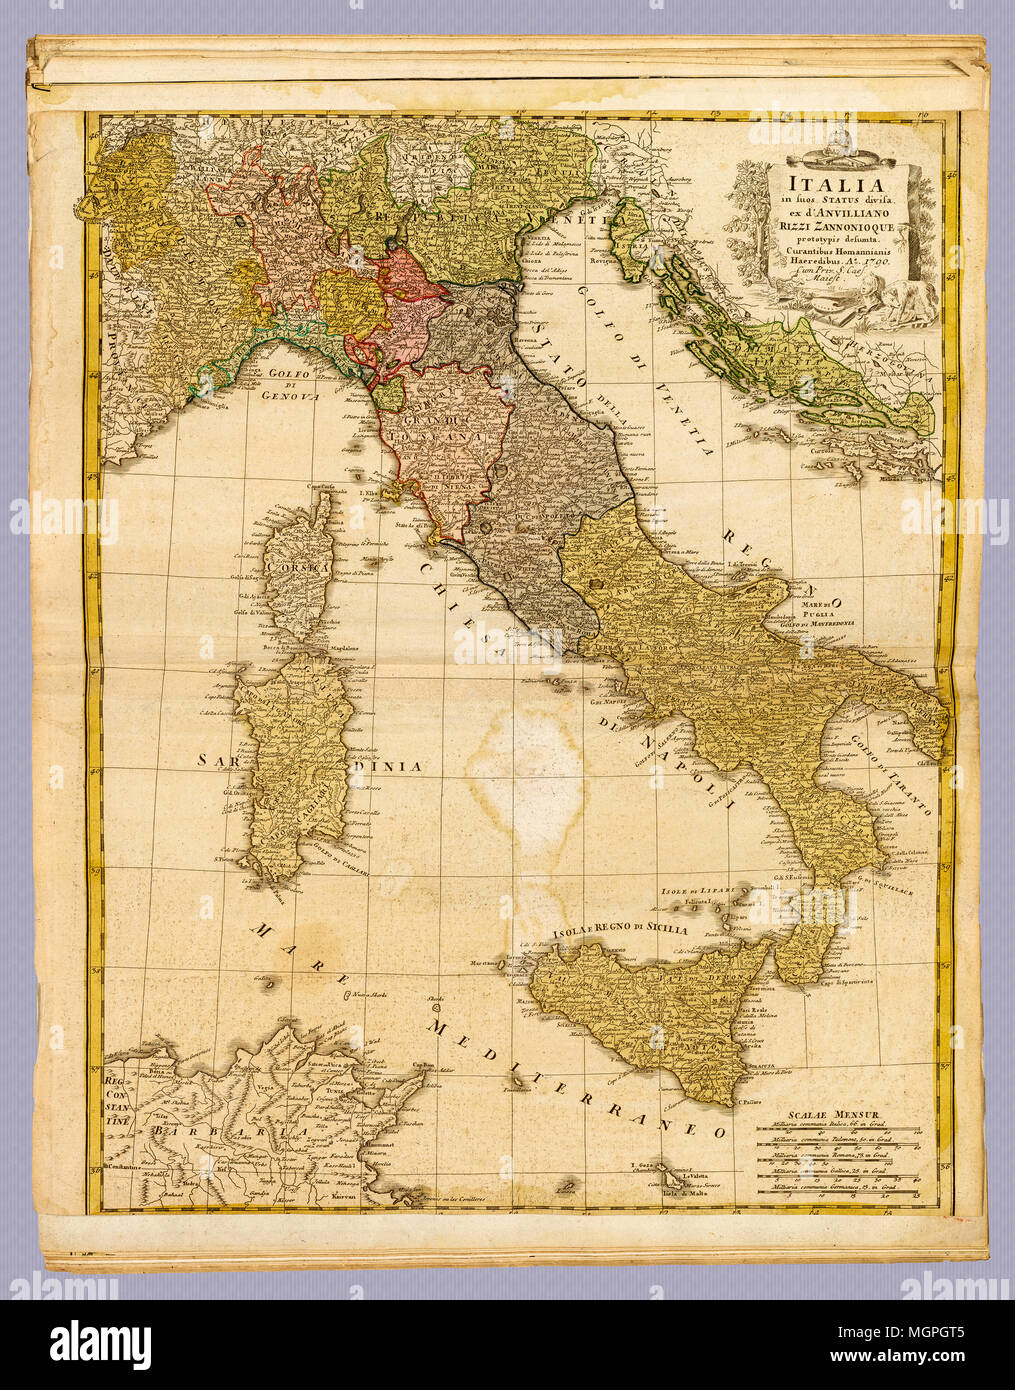 Italia Antica 1790 Italia mappa: Data di creazione: 1790. Homann (, Johann Baptist, 1663-1724 (cartografo) Foto Stock